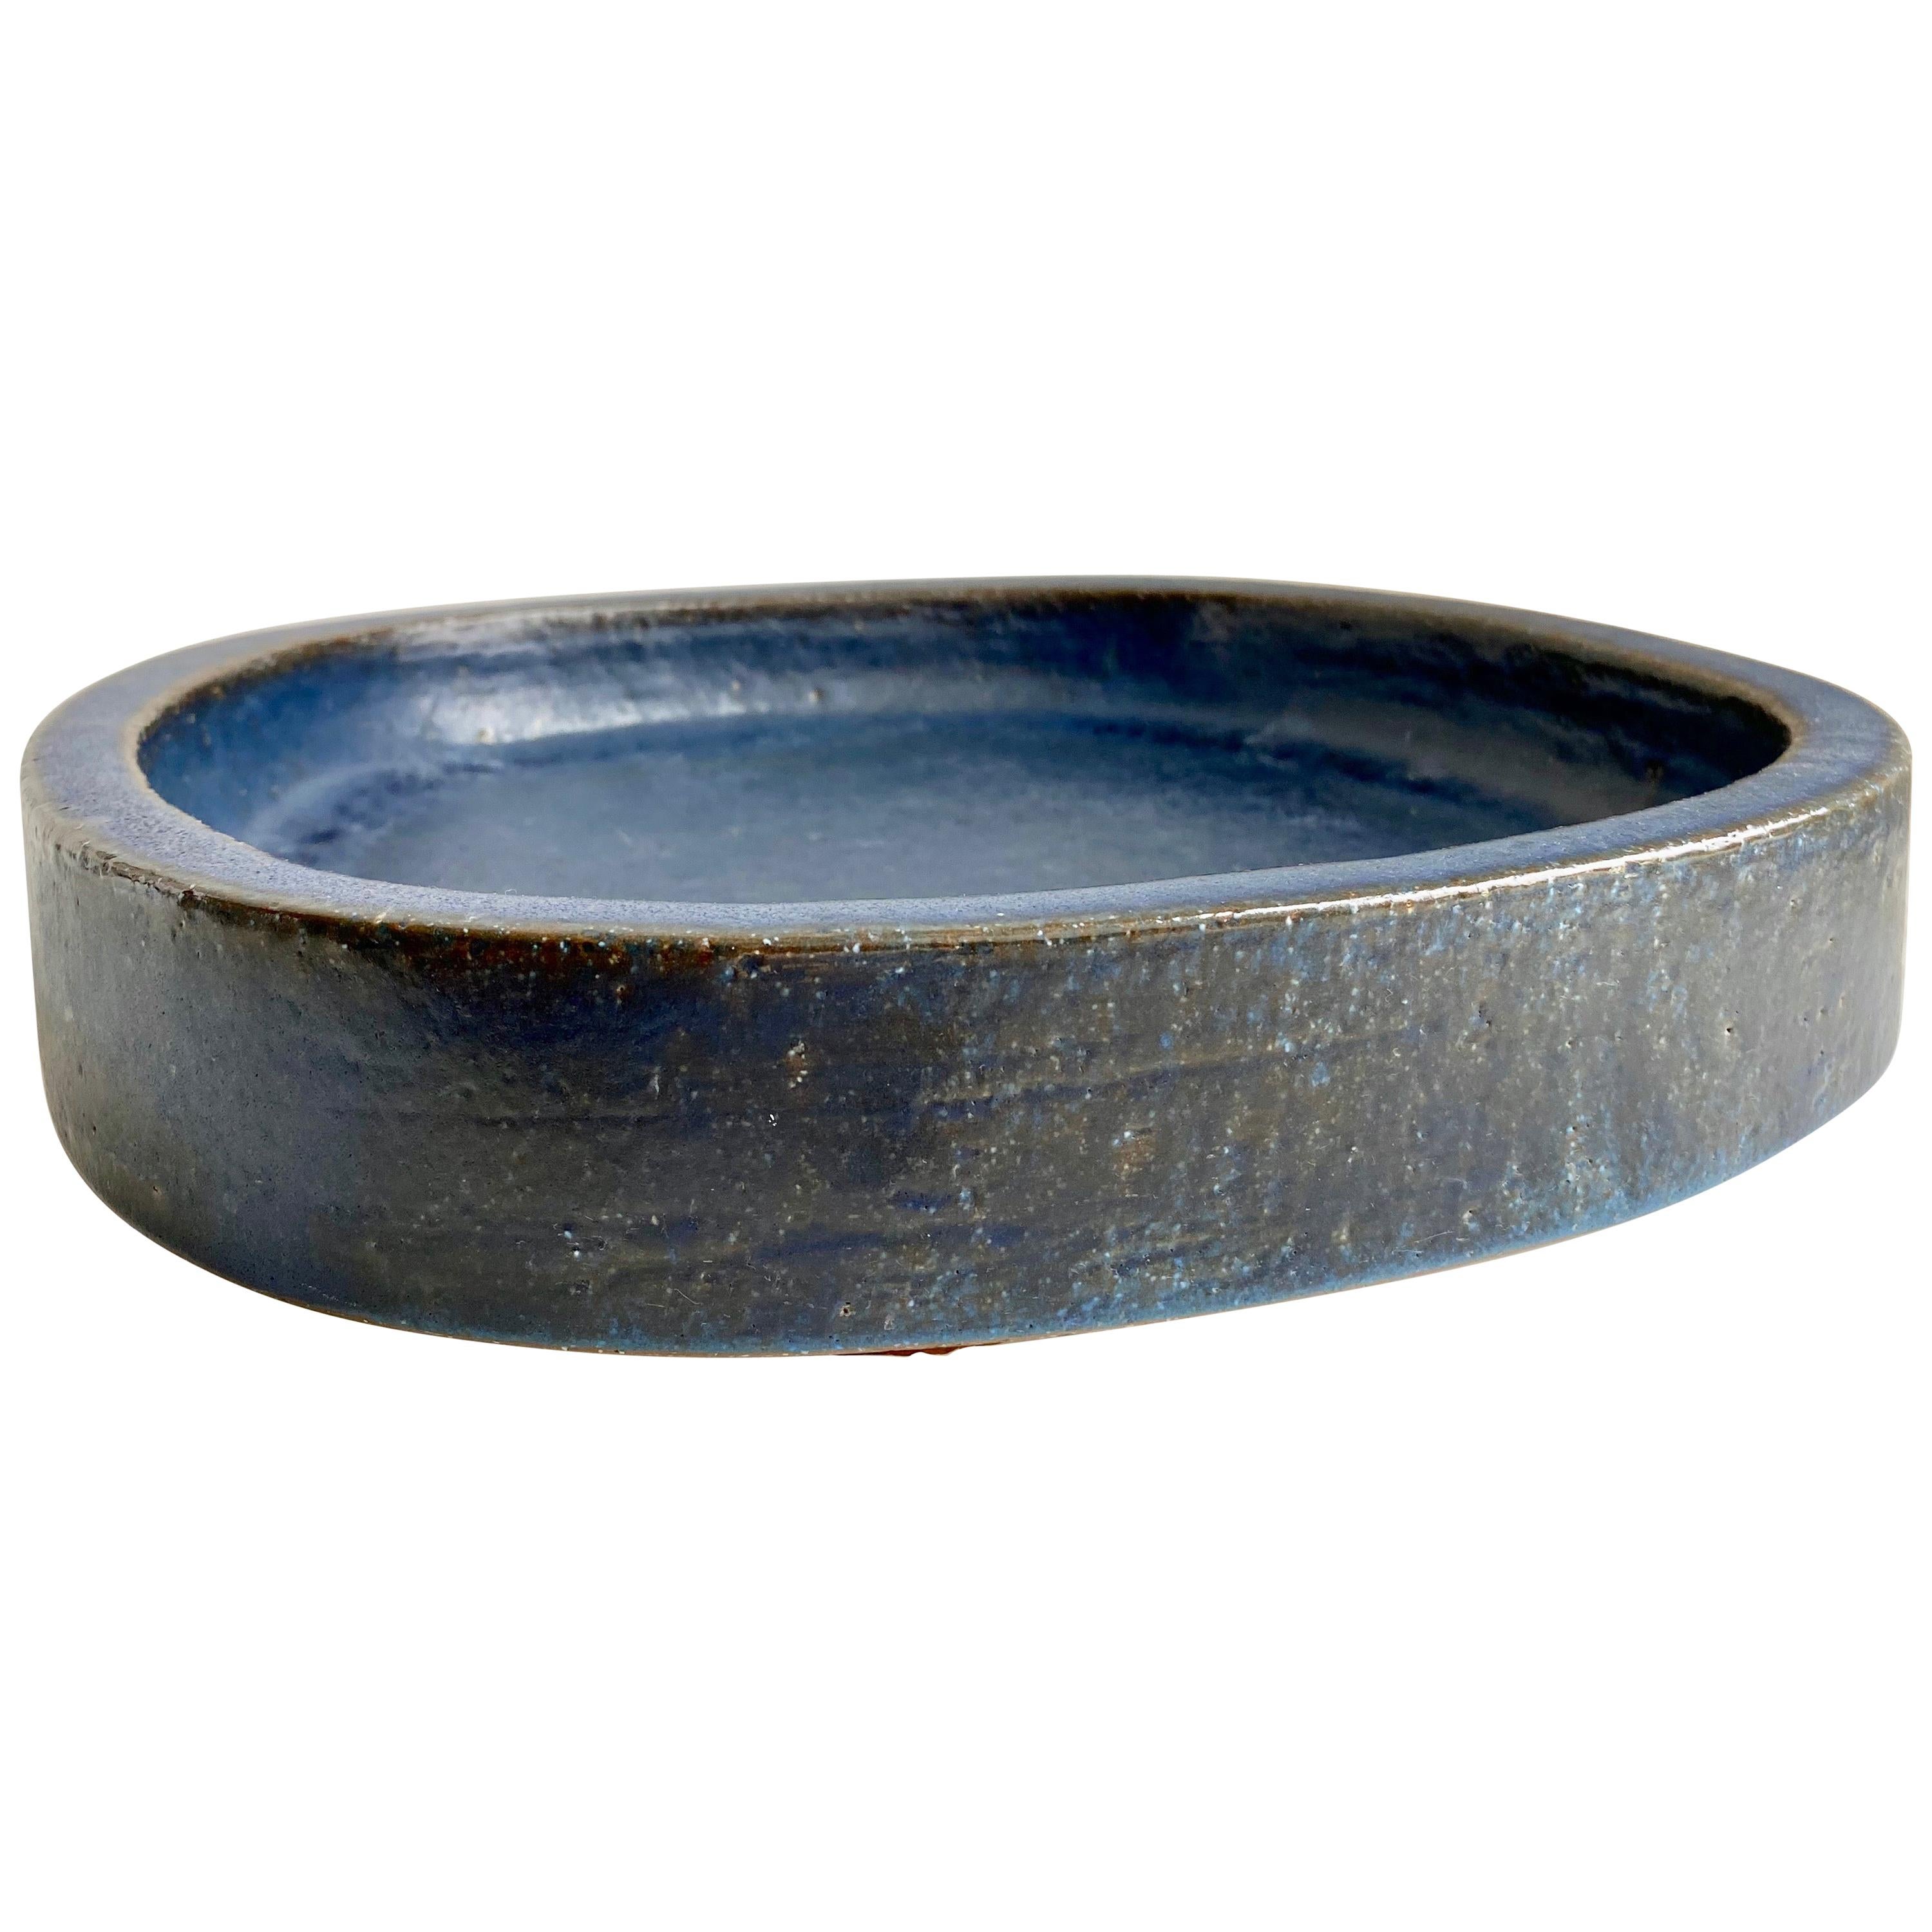 Indigo Stoneware Dish by Per Linnemann-Schmidt